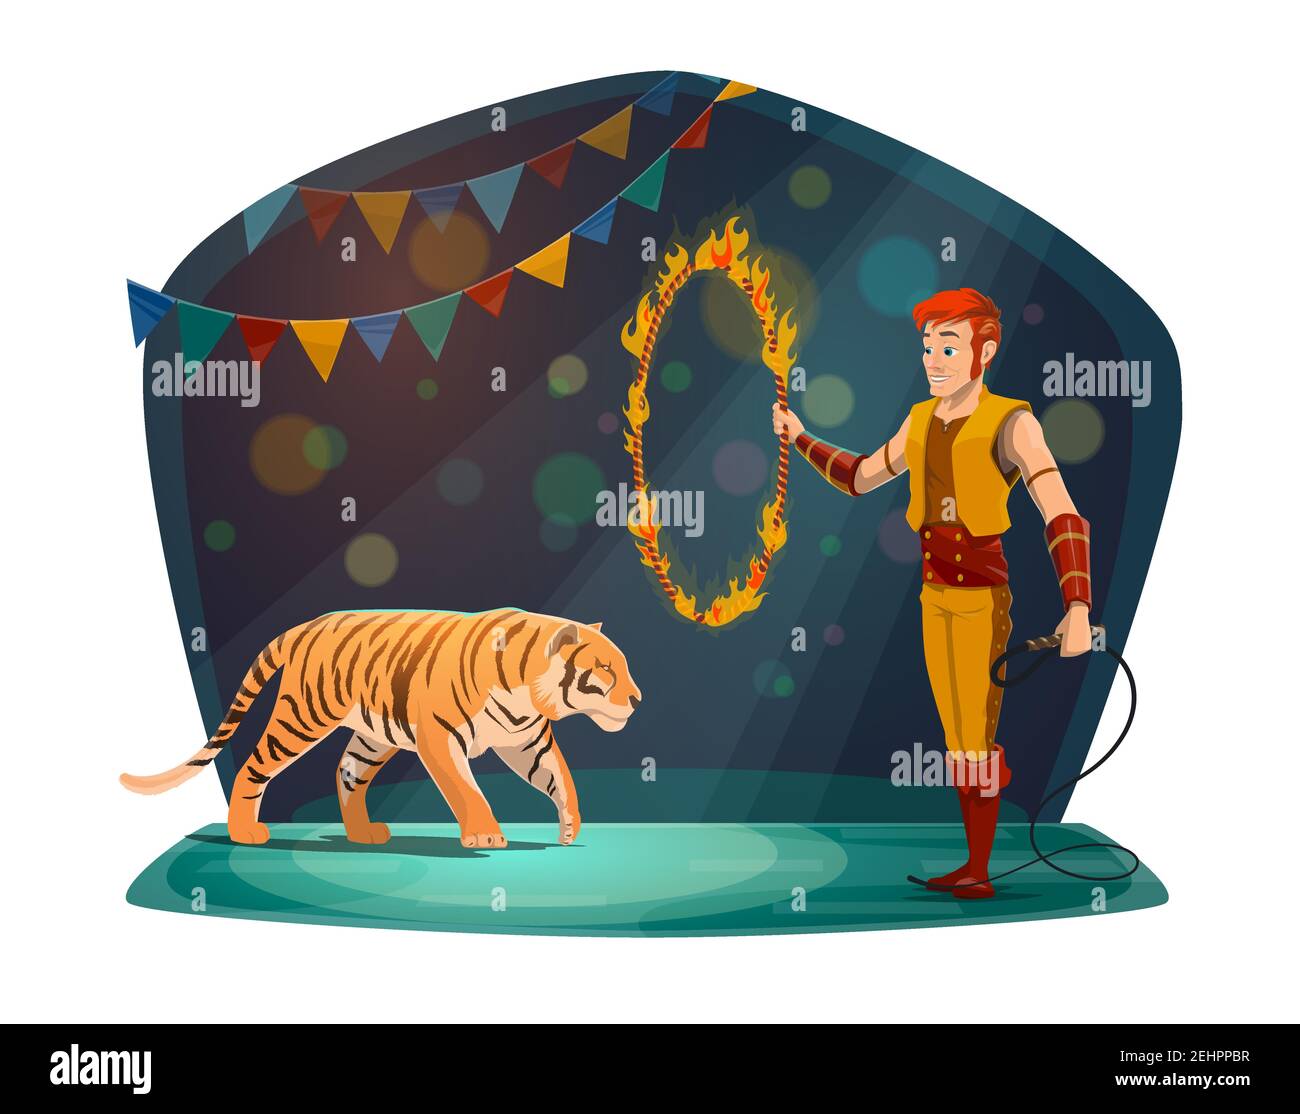 Zirkusvorstellung mit Tiger, der durch Feuerring springt und Handler in szenischer Tracht. Spektakuläre Unterhaltung, Mann mit Kreis in Flamme und wilde da Stock Vektor